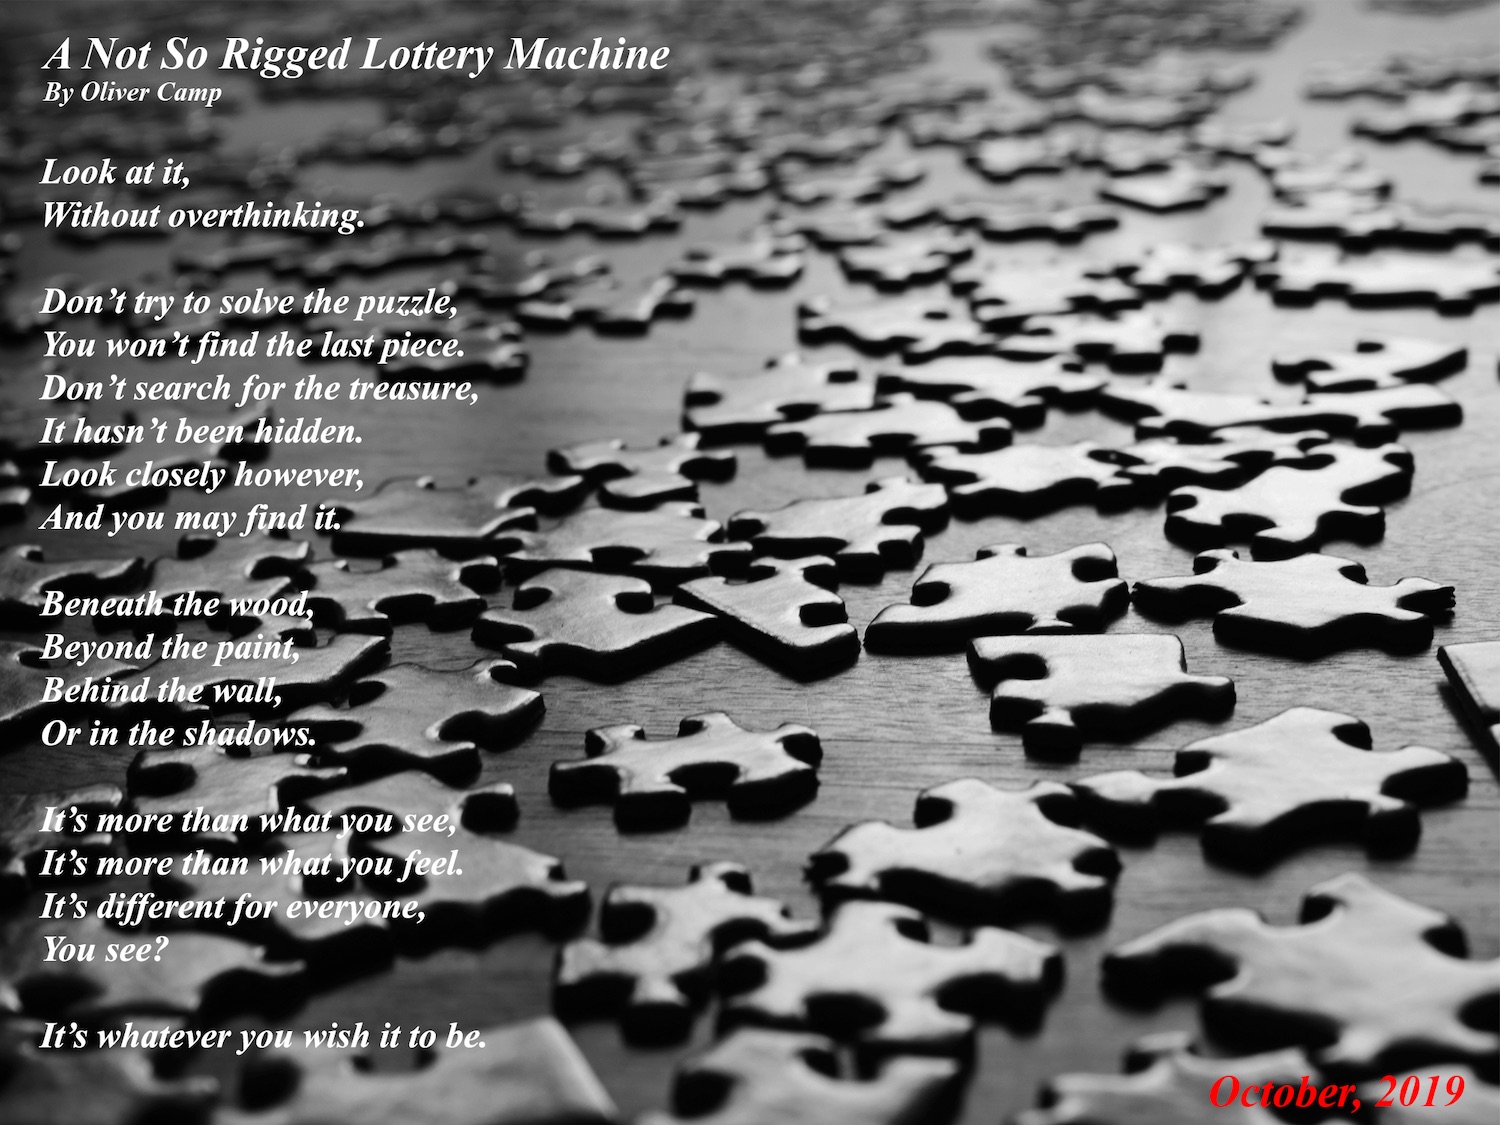 Poem by OliverC